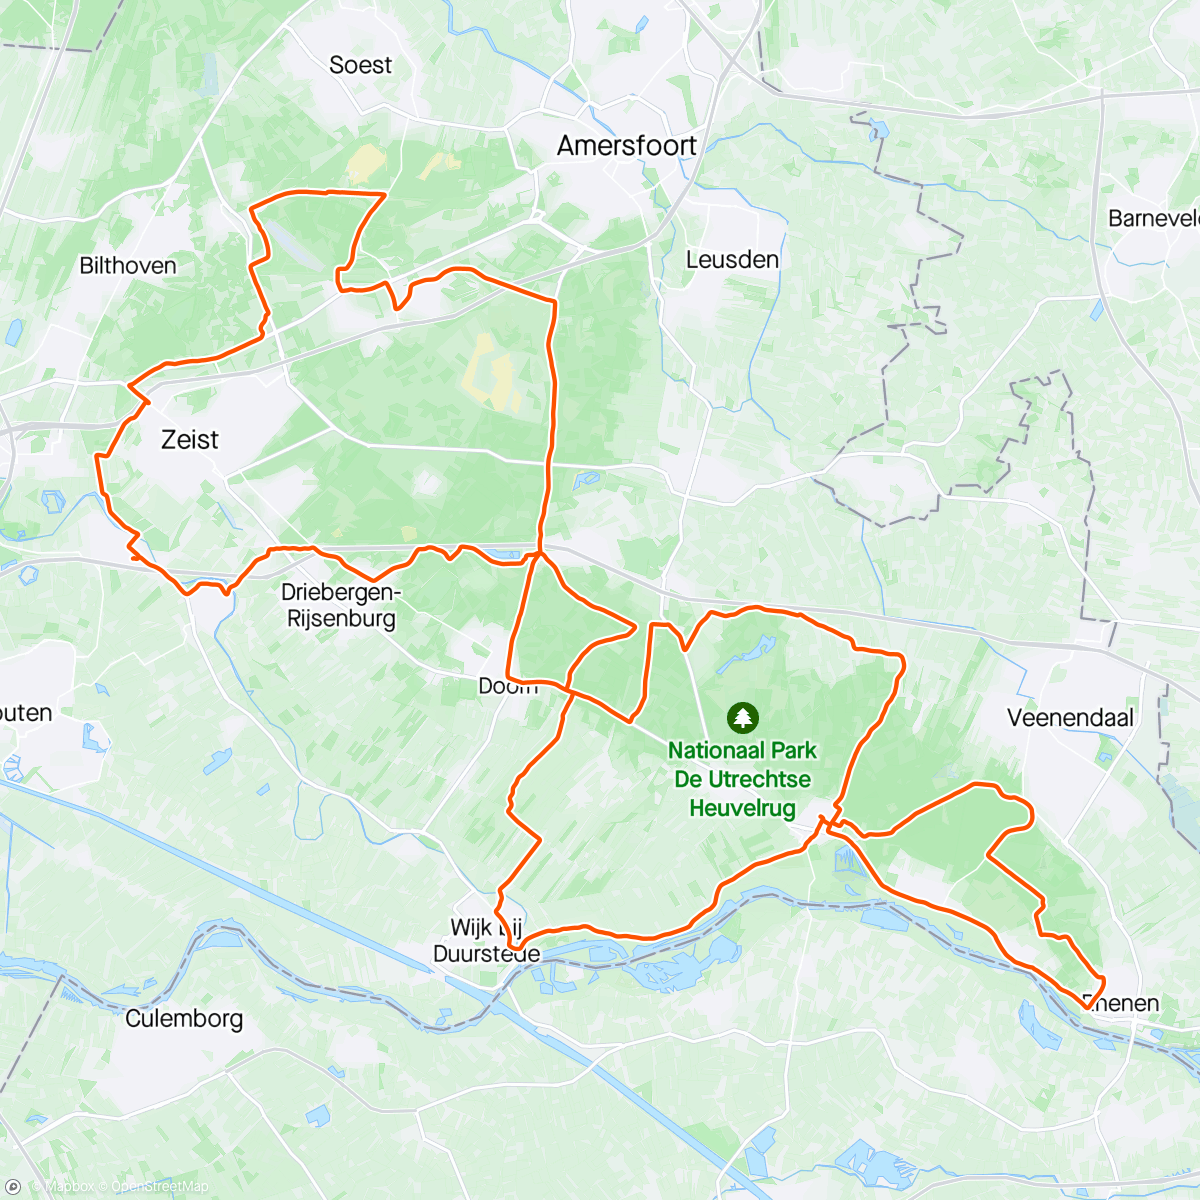 アクティビティ「Warm-up ride met de mannen van de Alpen. Reconnecten in mooie omgeving」の地図